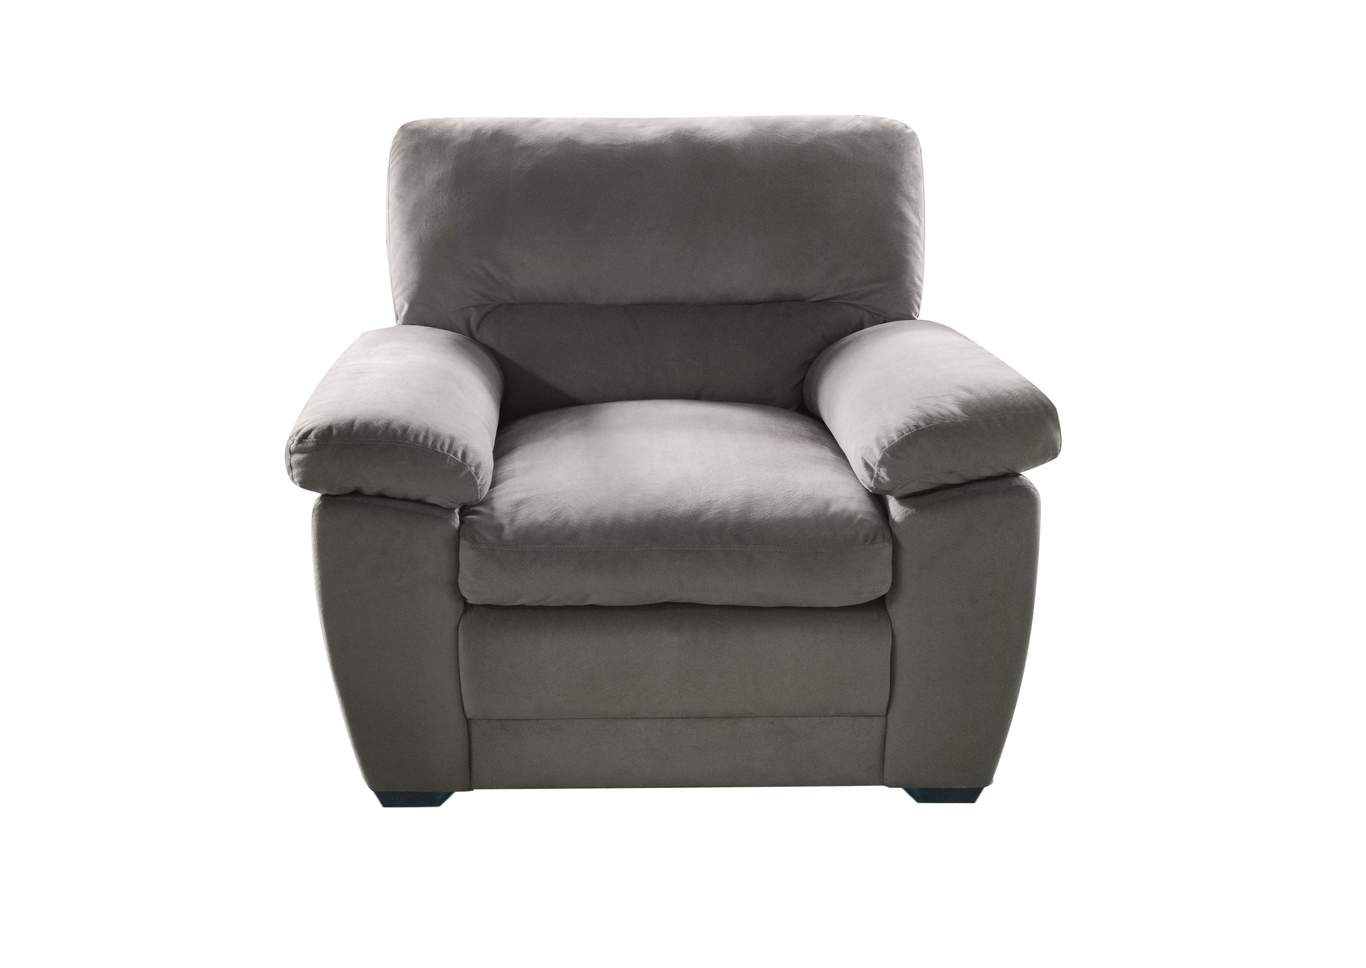 Chair,Galaxy Home Furniture